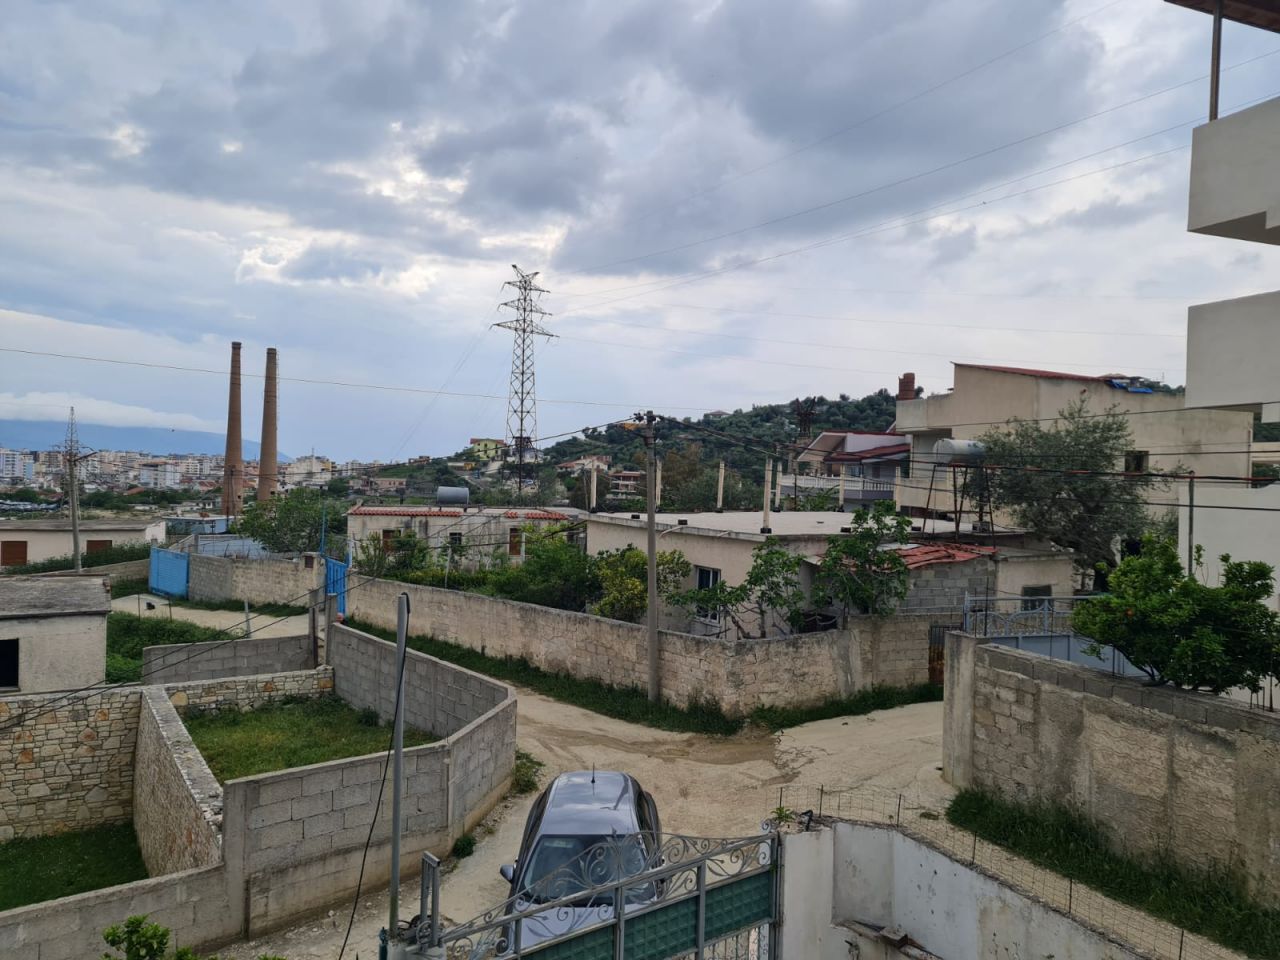 3-STOCK-VILLA ZU VERKAUFEN IN VLORE, ALBANIEN